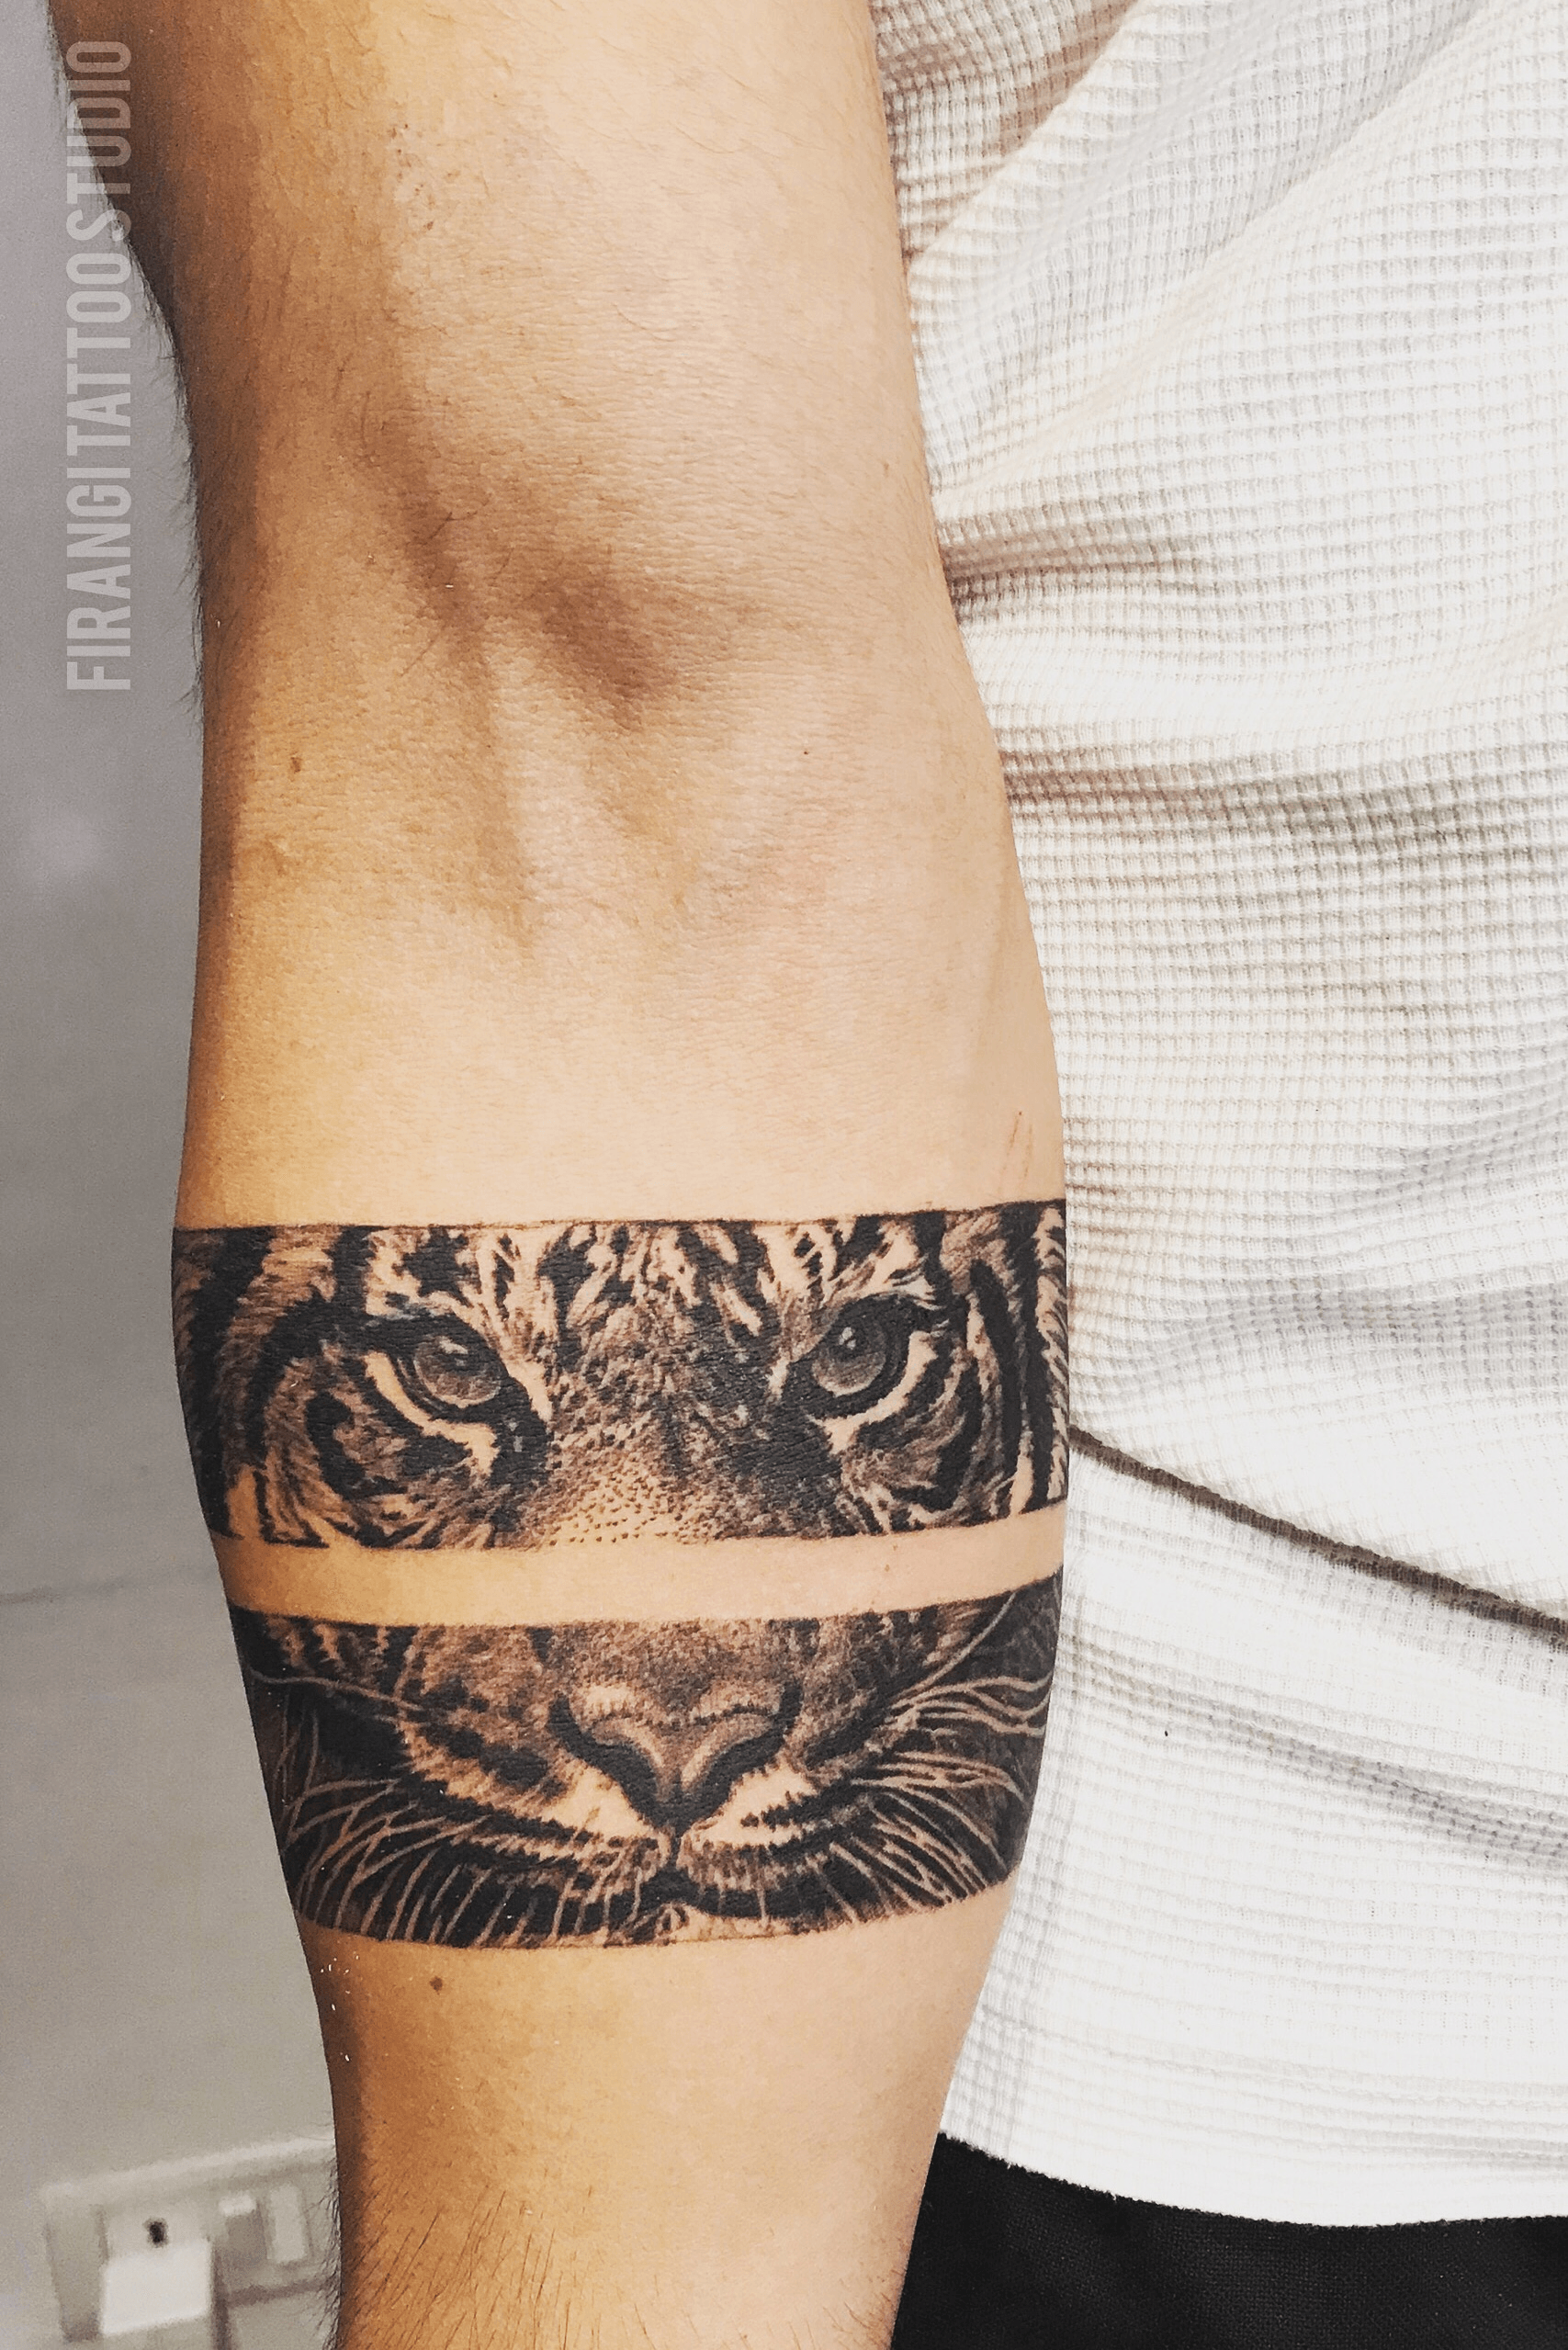 arm band  best tiger band  Tiger arm band tattoo  Olhos de tigre  tatuagem Tatuagem de listras Lion tatuagem